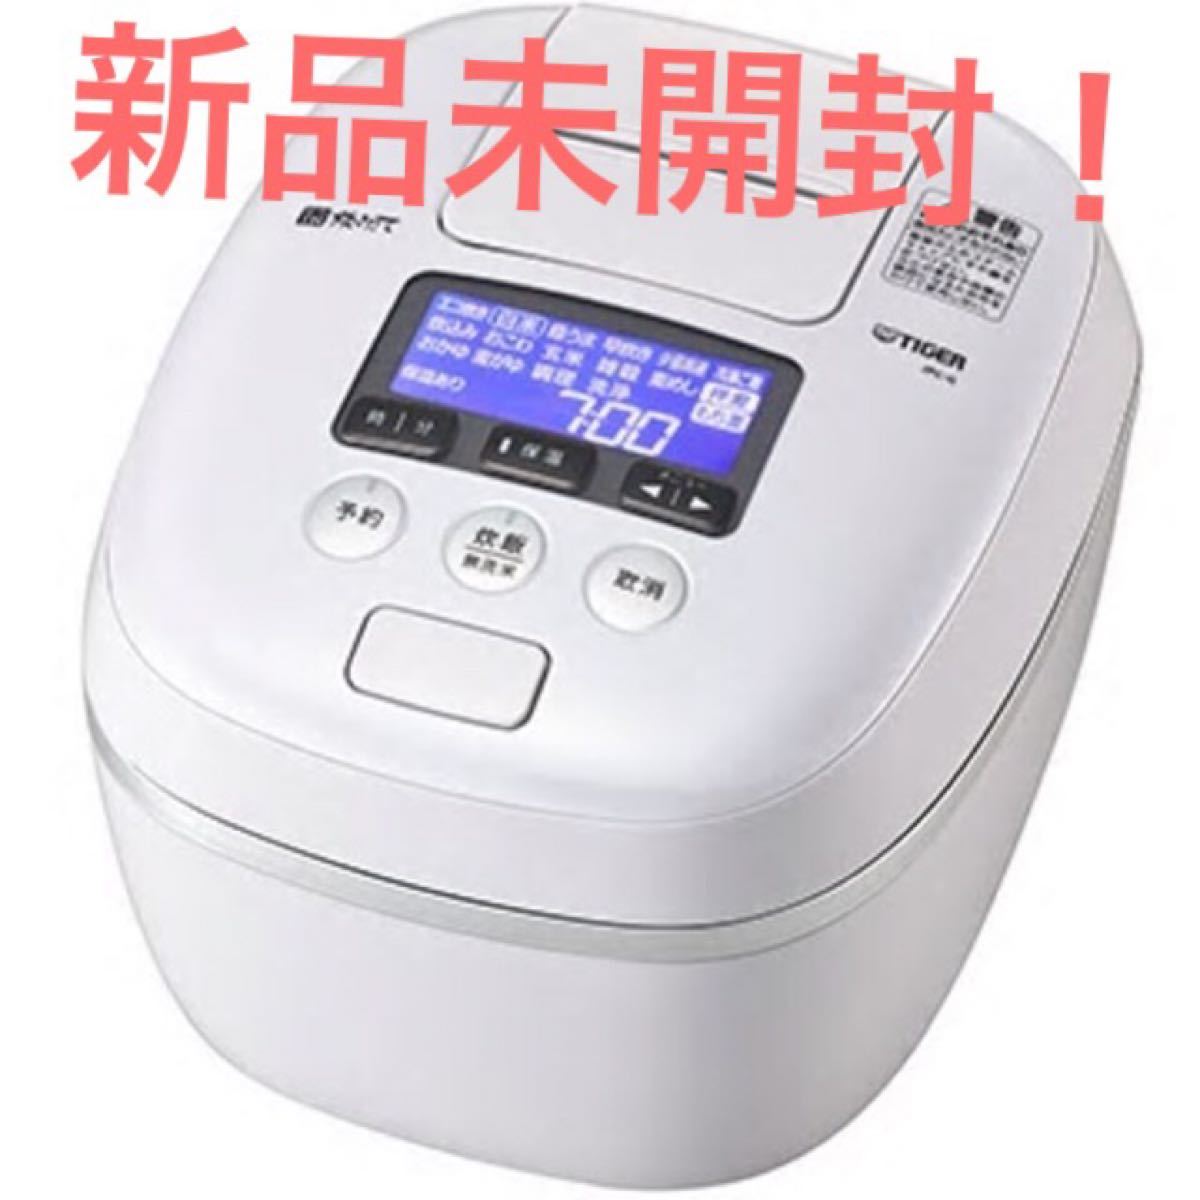 【新品】タイガー厚釜土鍋圧力IH炊飯器5.5合炊きJPC-G100